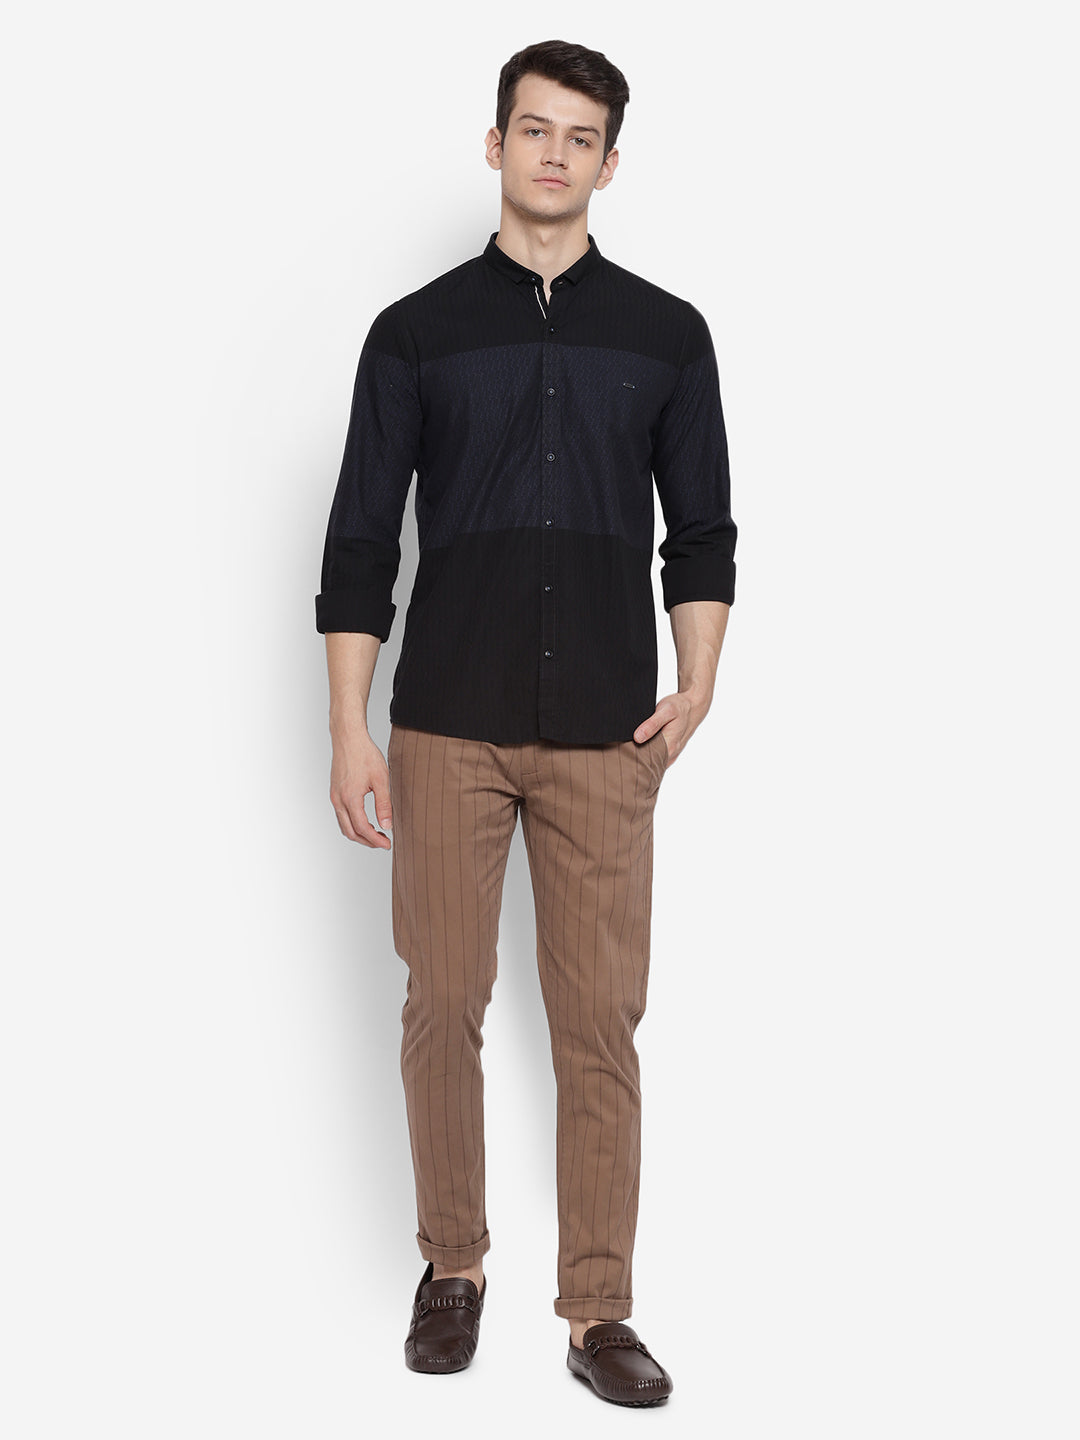 Self Design Black Slim Fit Casual Shirt